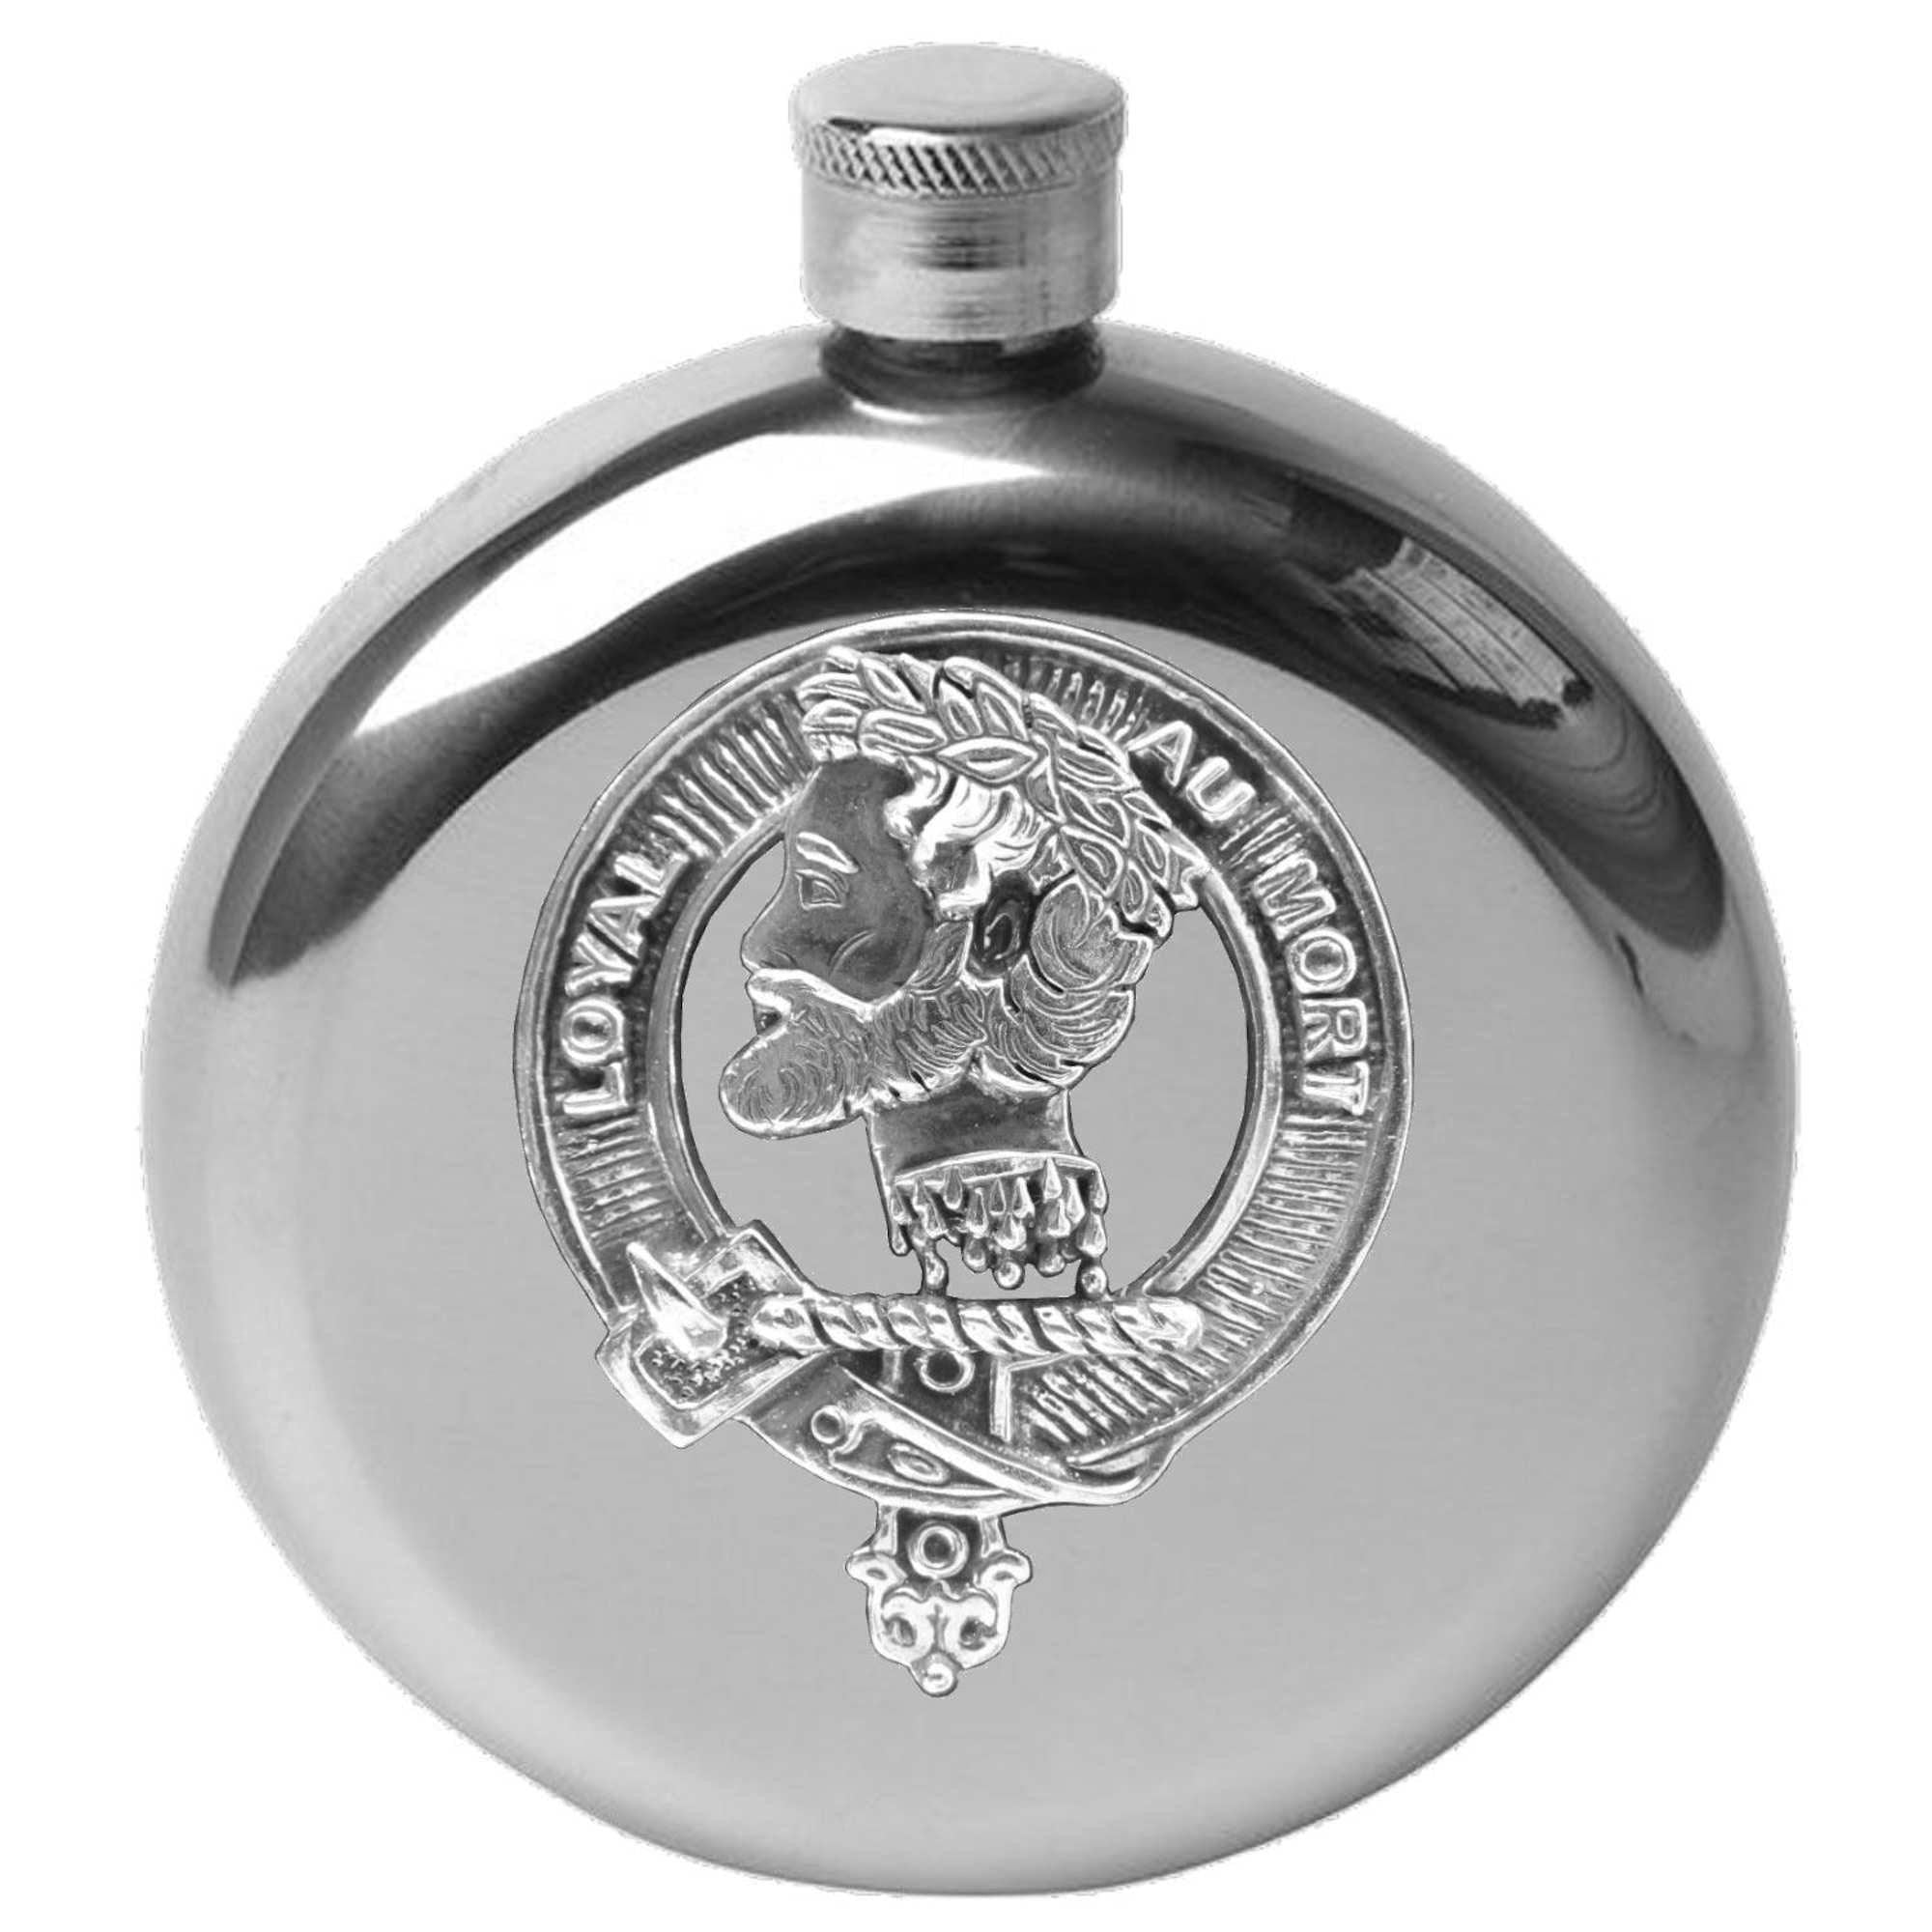 Adair 5 oz Round Clan Crest Scottish Badge Flask